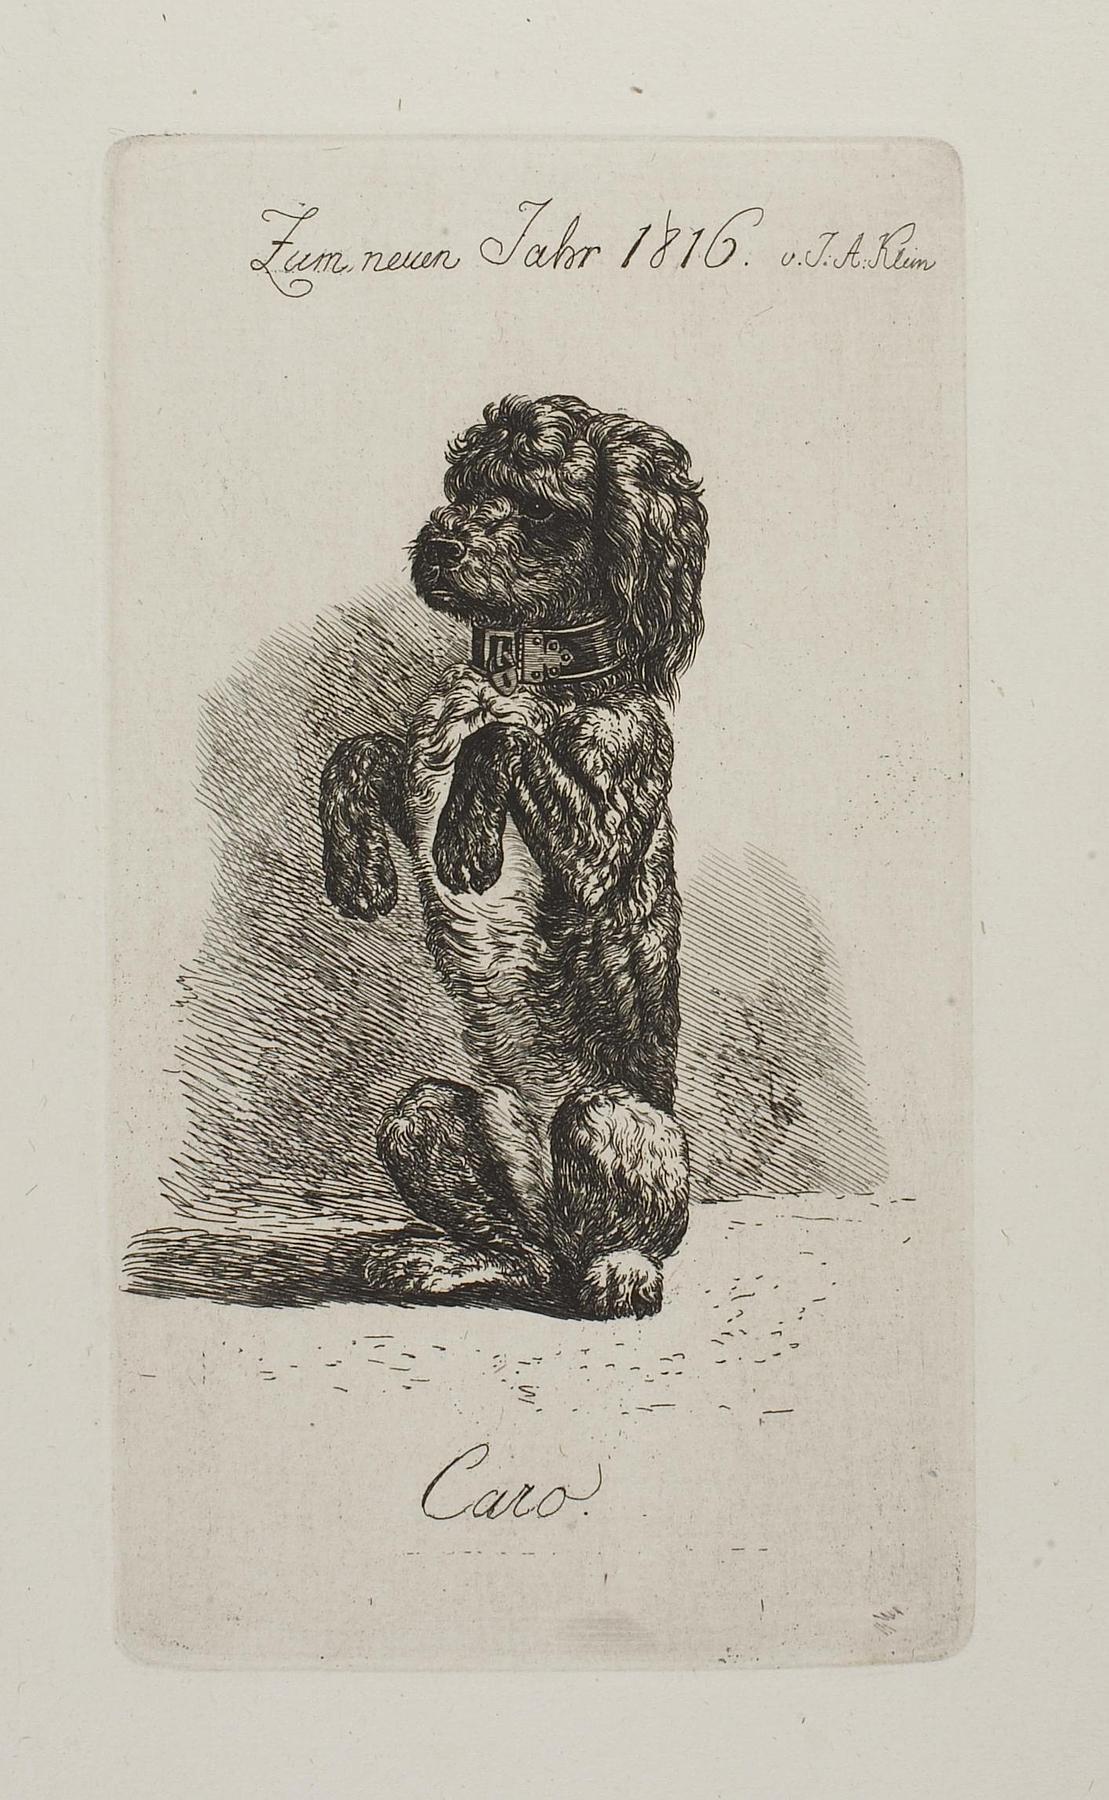 Zum neuen Jahr 1816. Puddelhunden Caro, E686